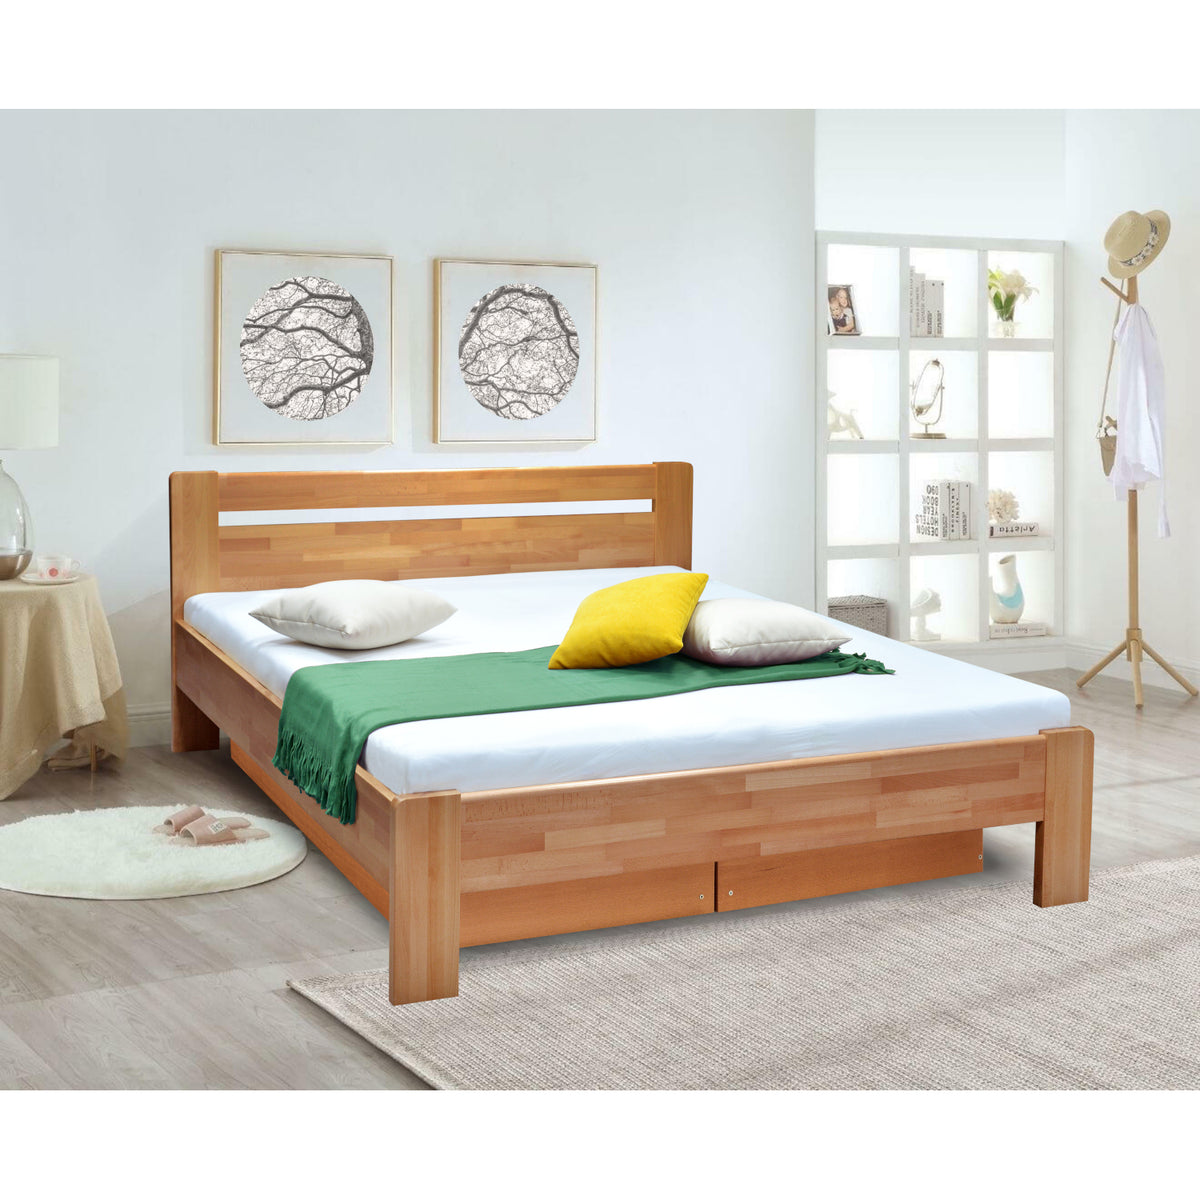 Masivní postel Maribo 2, 180x200, vč. roštu, bez matr., švestka